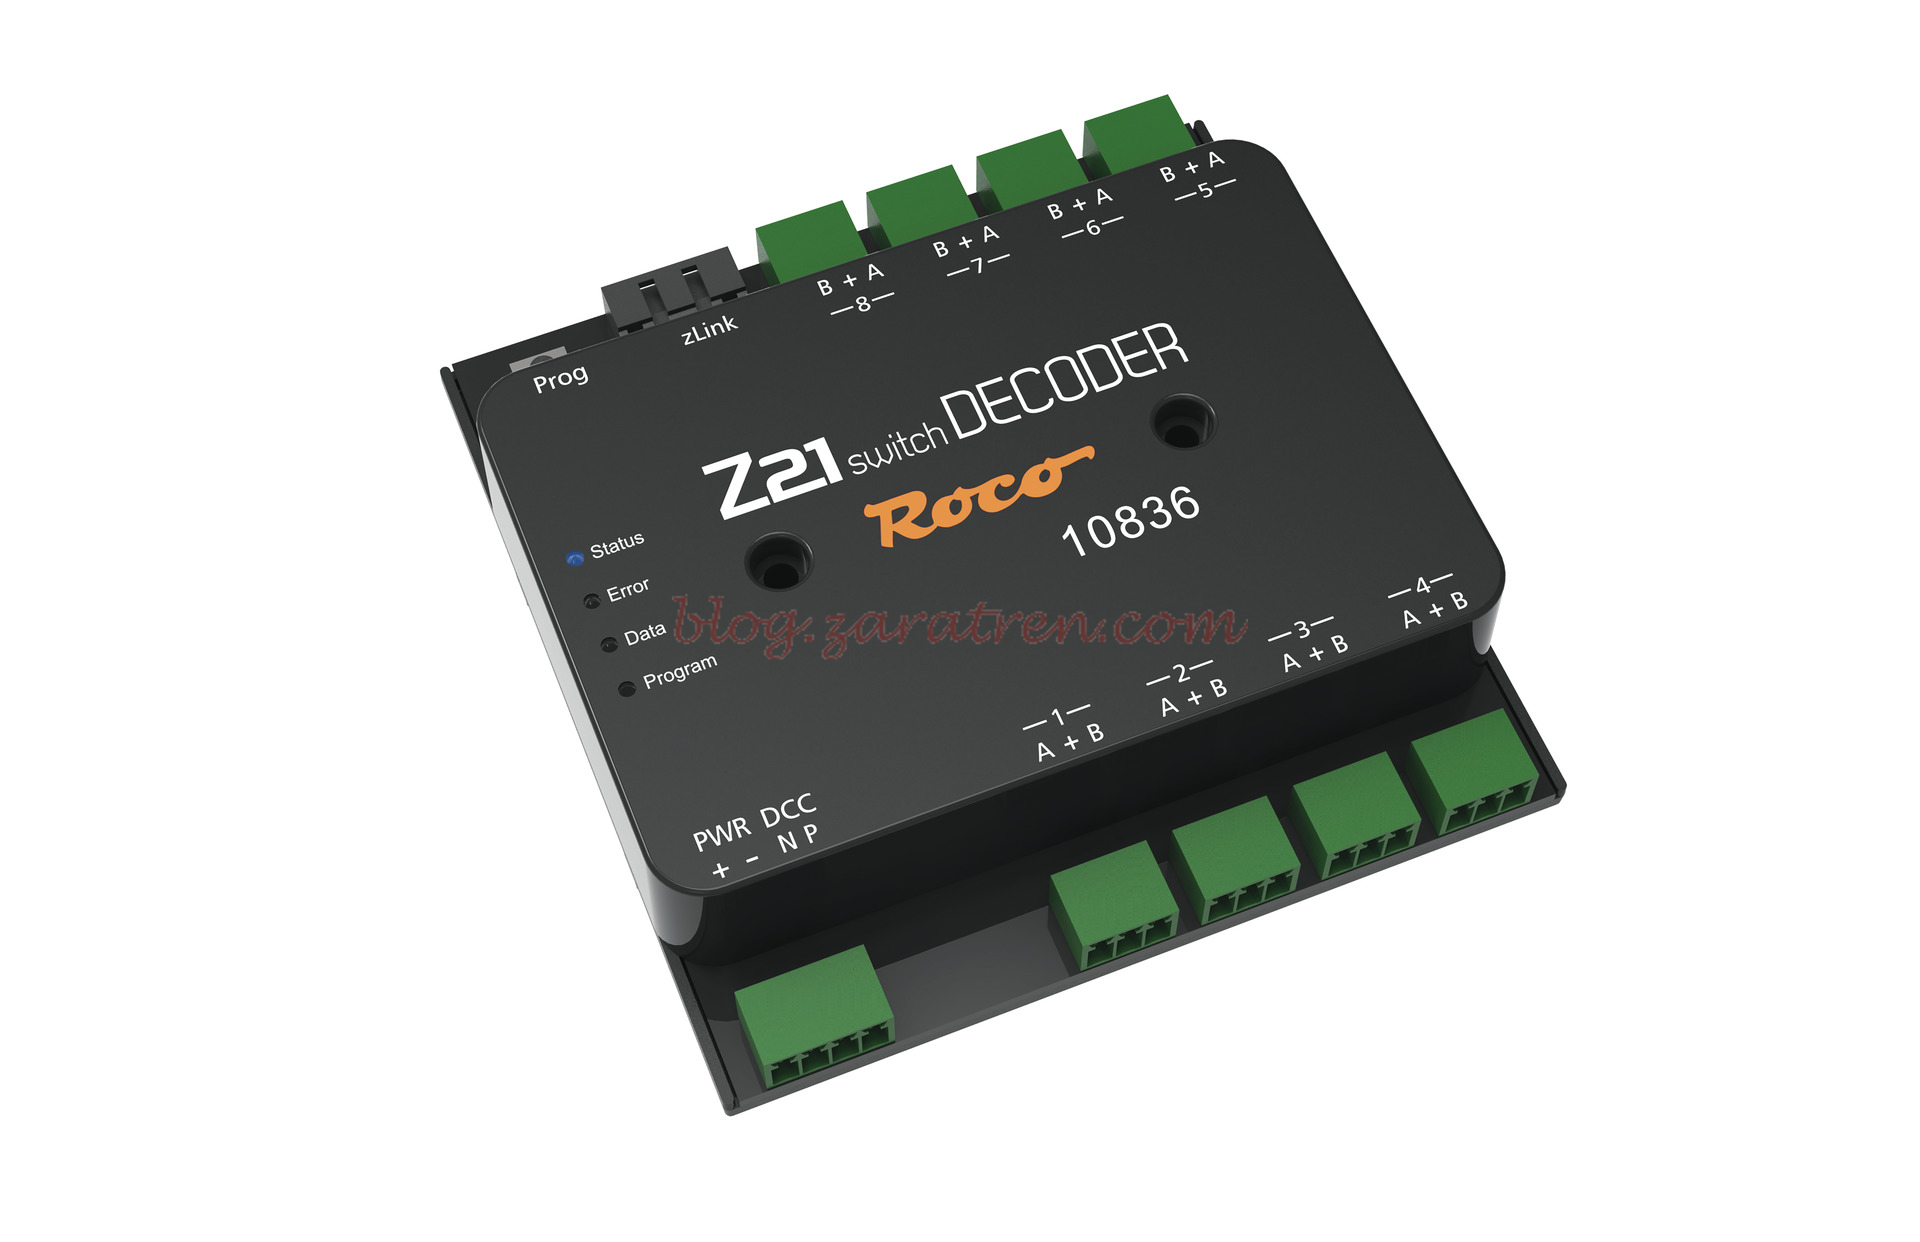 Roco – Z21 switch DECODER, para la central digital Fleischmann-Roco z21, Ref: 10836.